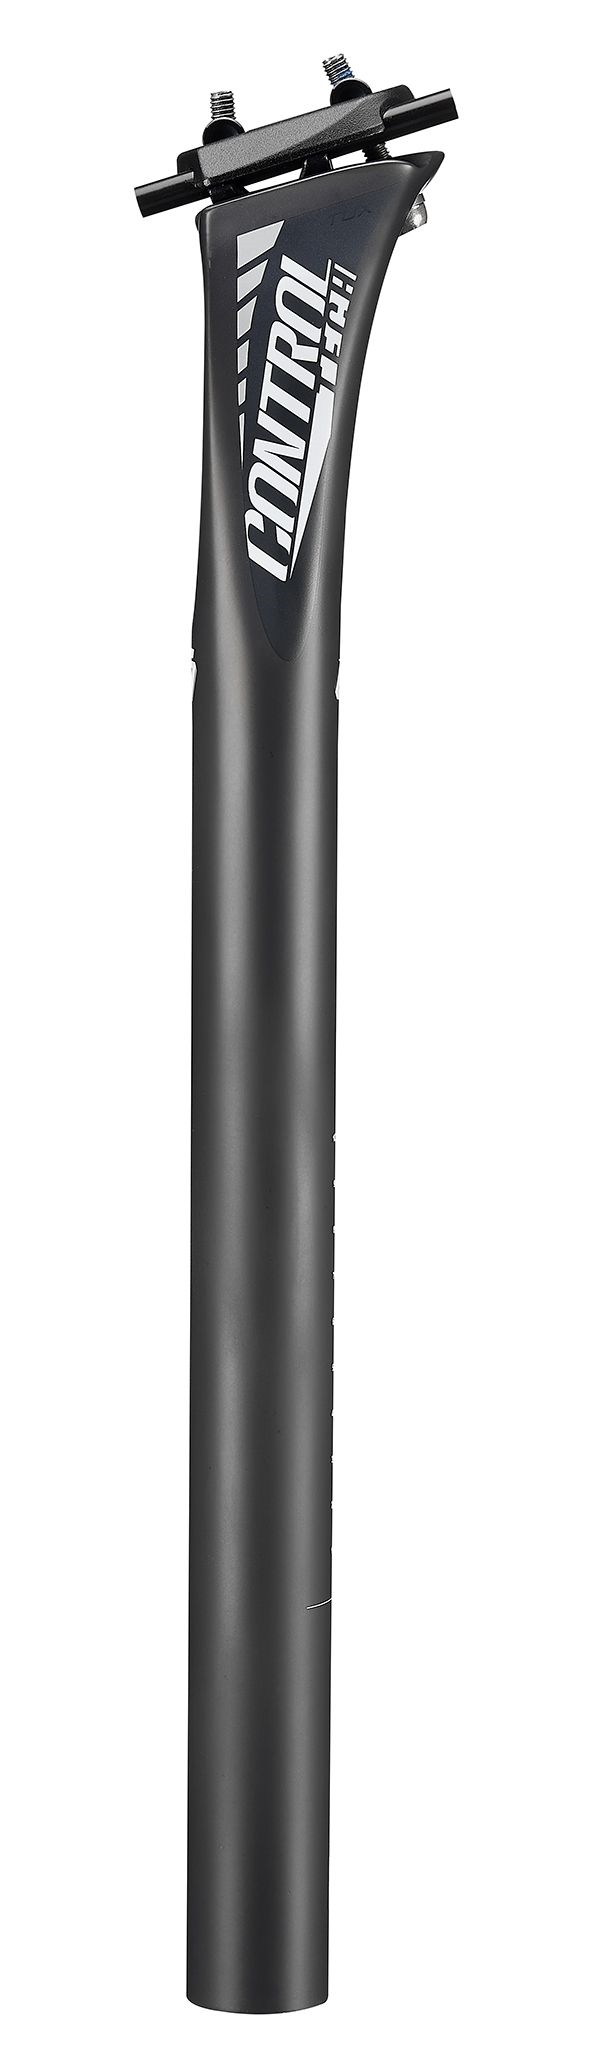 sedlovka CONTROLTECH TUX LIGHT 31,6/400mm,karbon Typ: pevná, průměr: 31,6, materiál: karbon